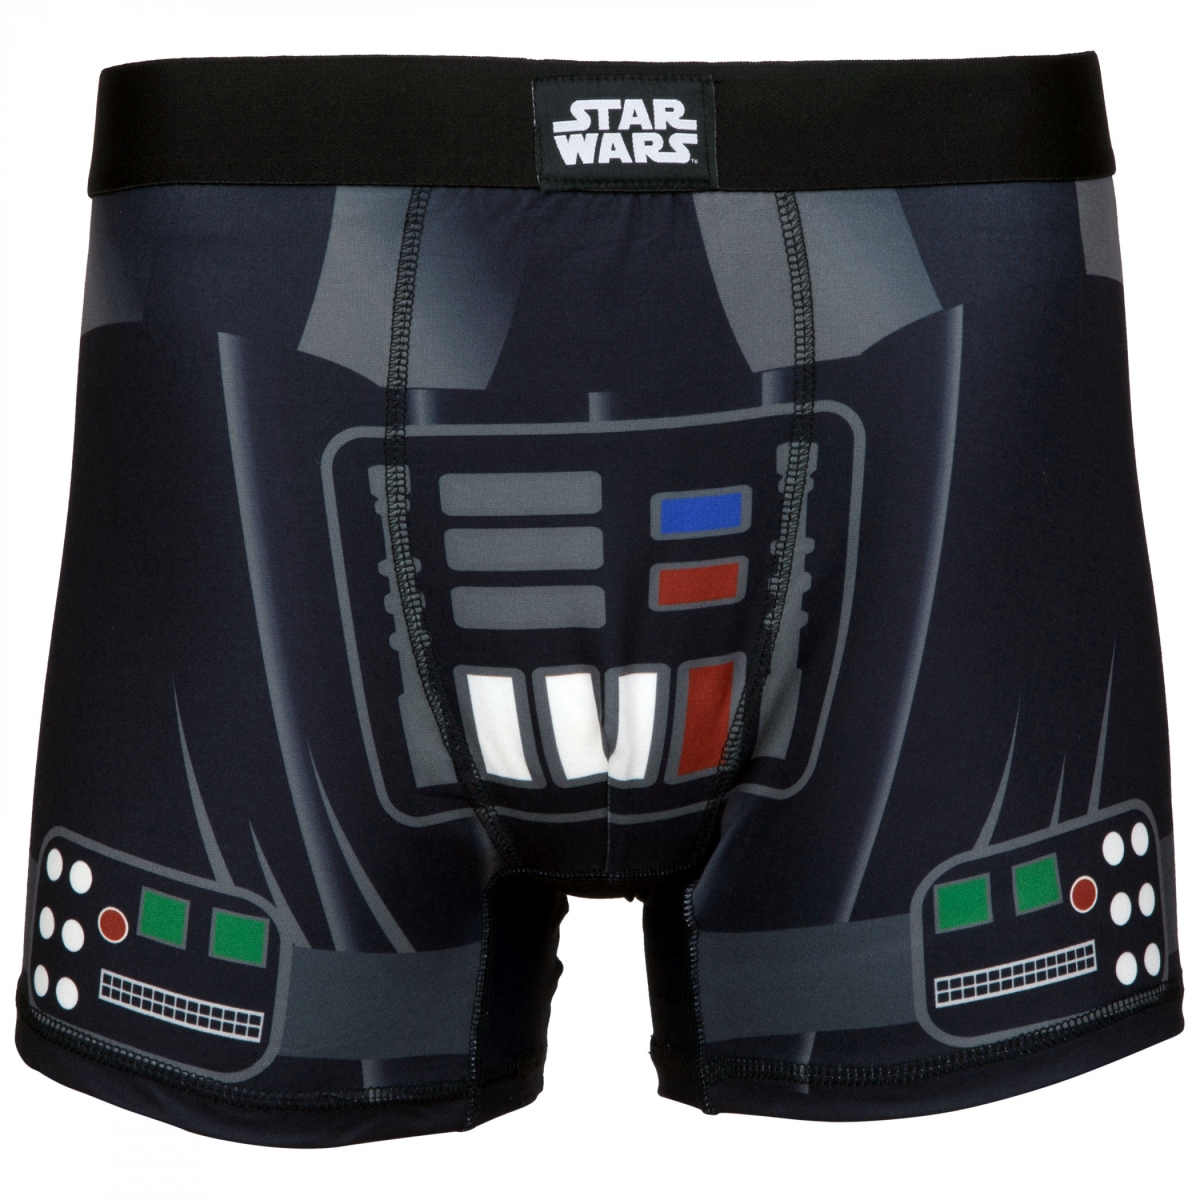 851928-ge-36-38  Darth Vader Cosplay Mens Underwear Boxer Briefs - Large - 36-38 -  Star Wars, 851928-ge(36-38)